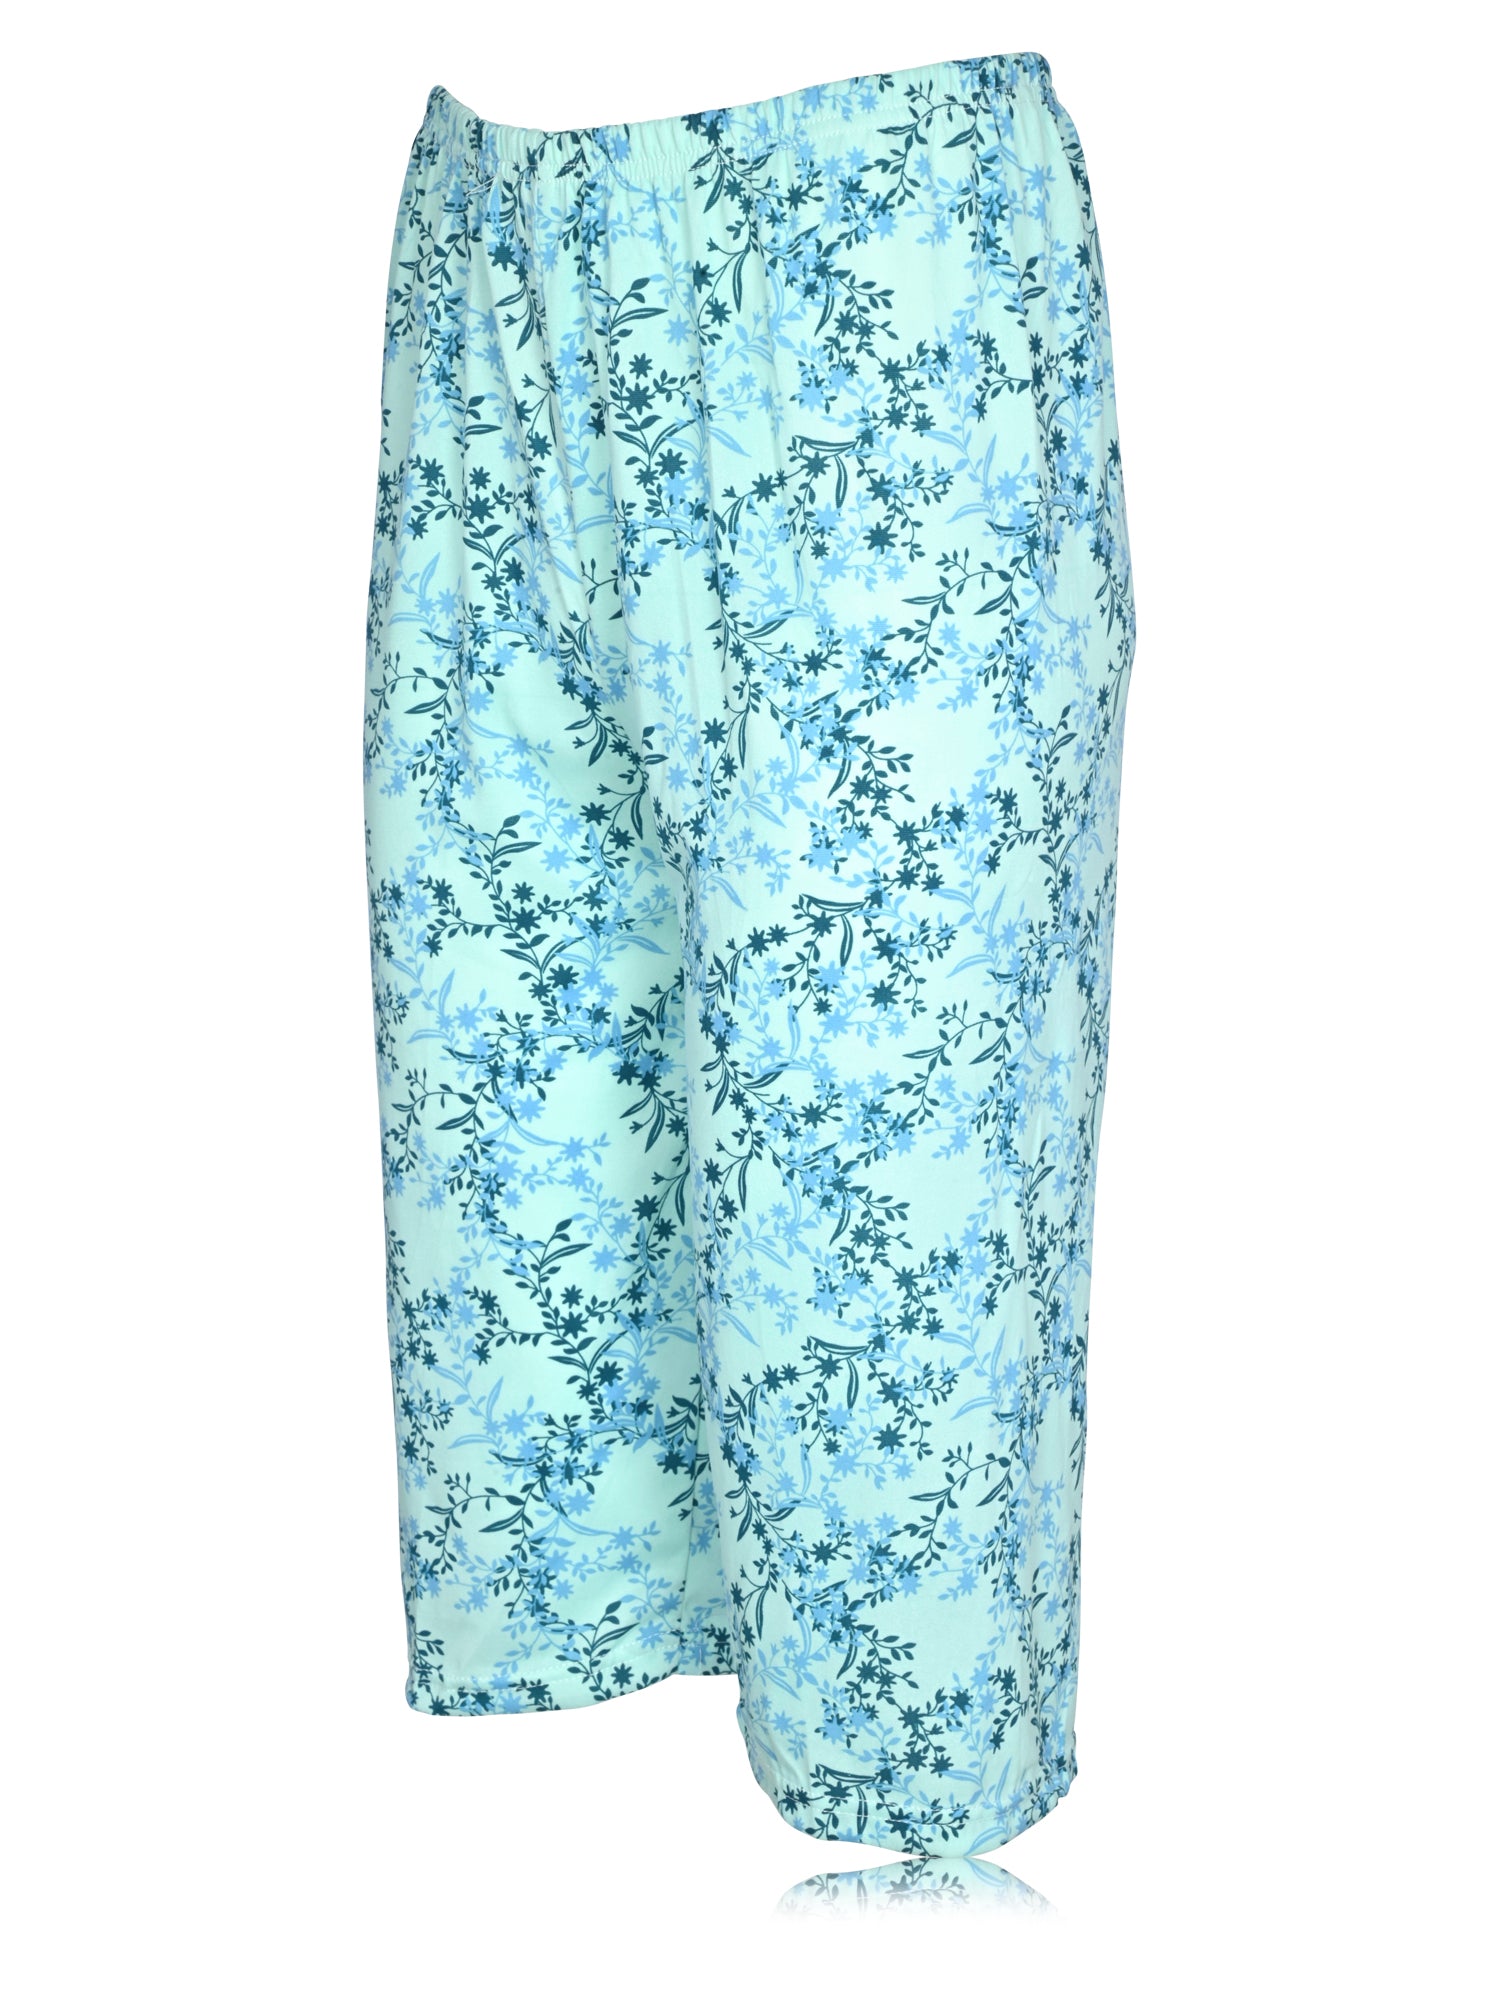 JEFFRICO Womens Pajamas For Women Capri Set Sleepwear Soft Pajamas – Regines